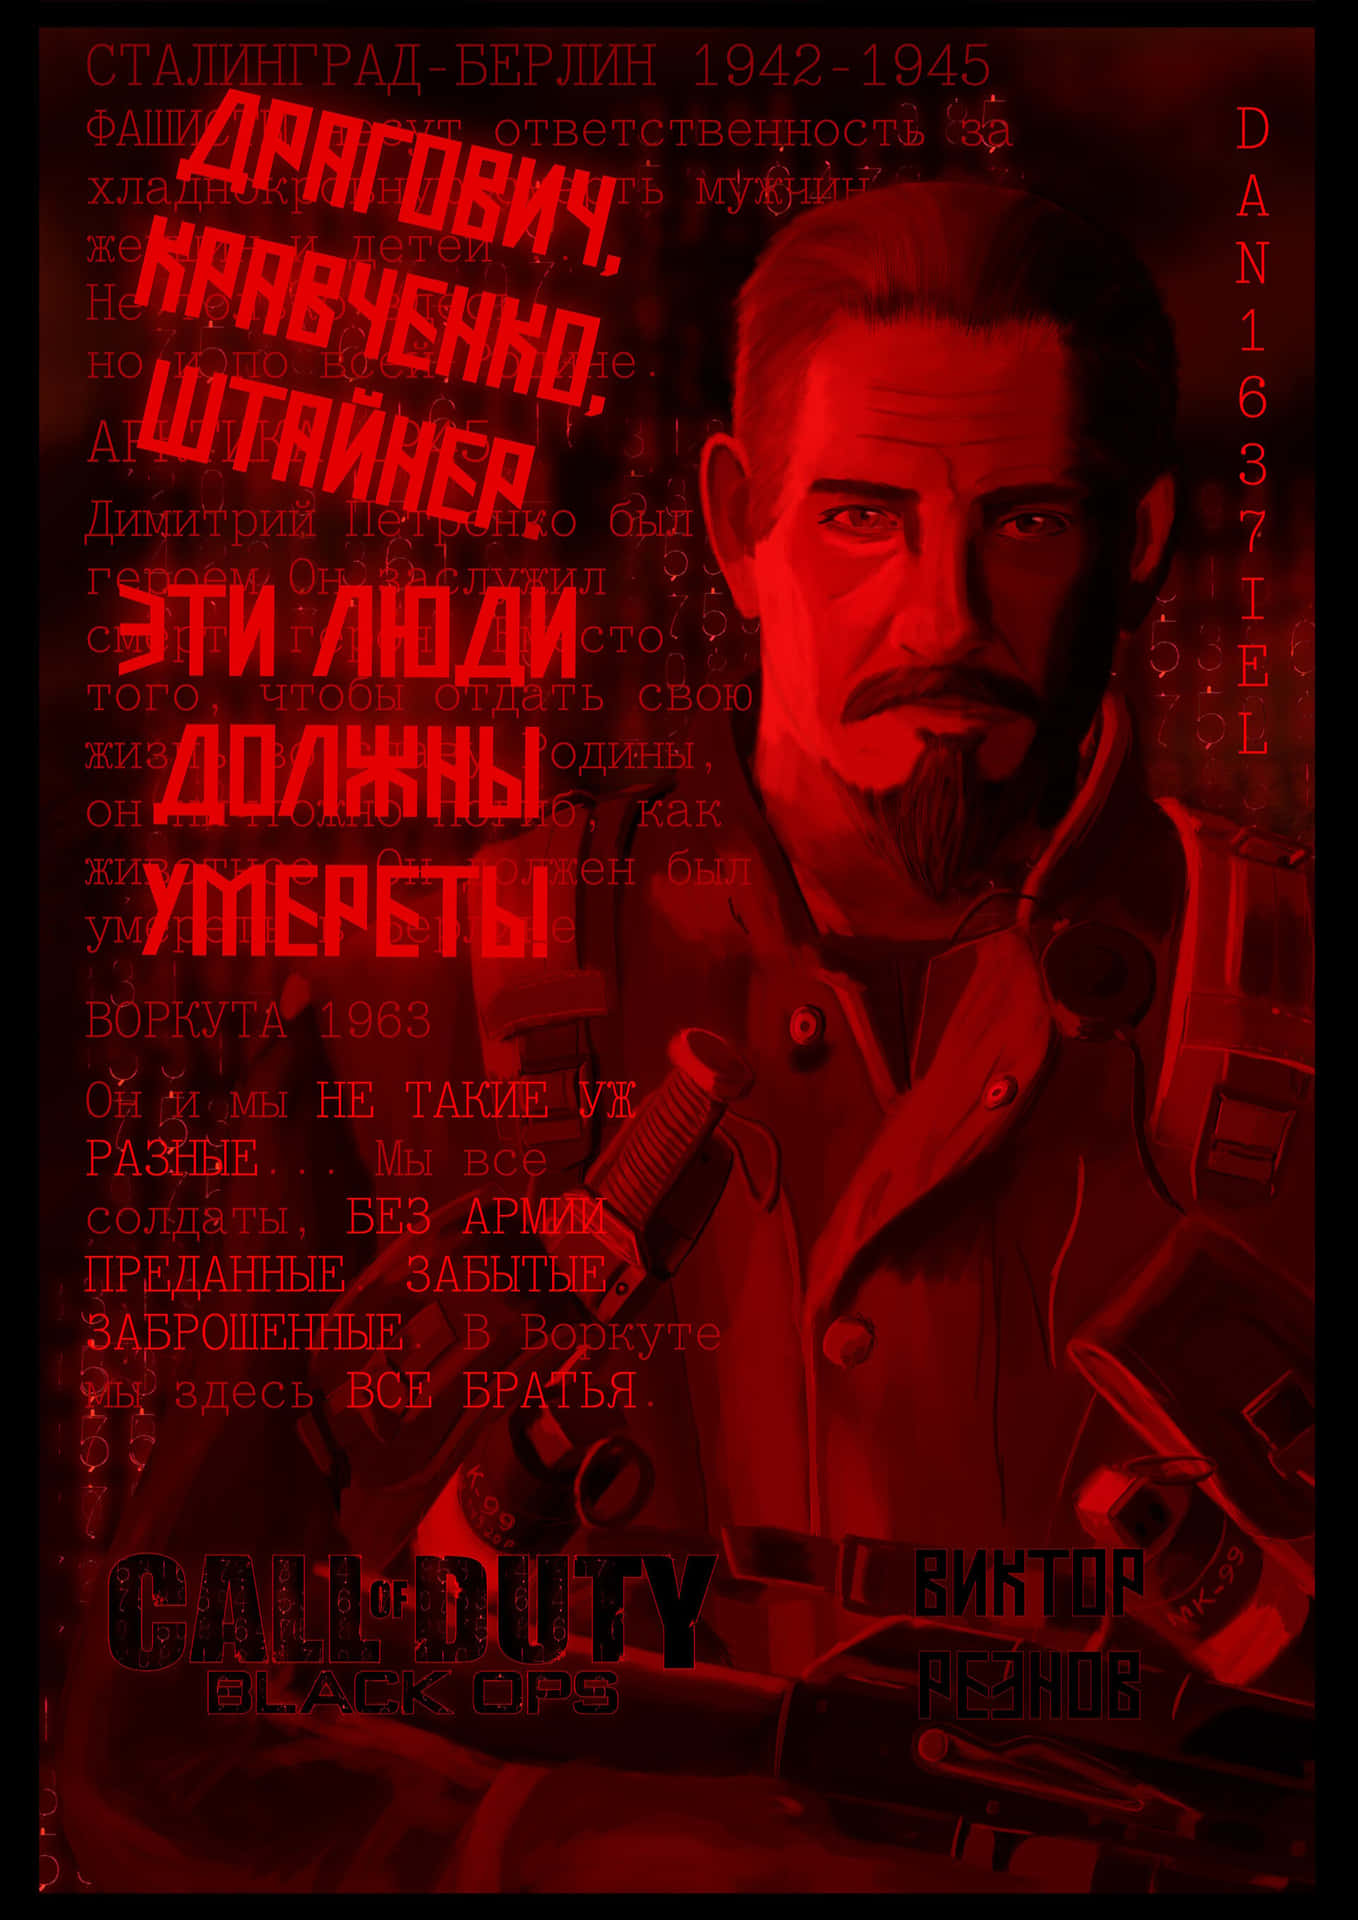 Viktor Reznov, the Legendary Call of Duty Character Wallpaper